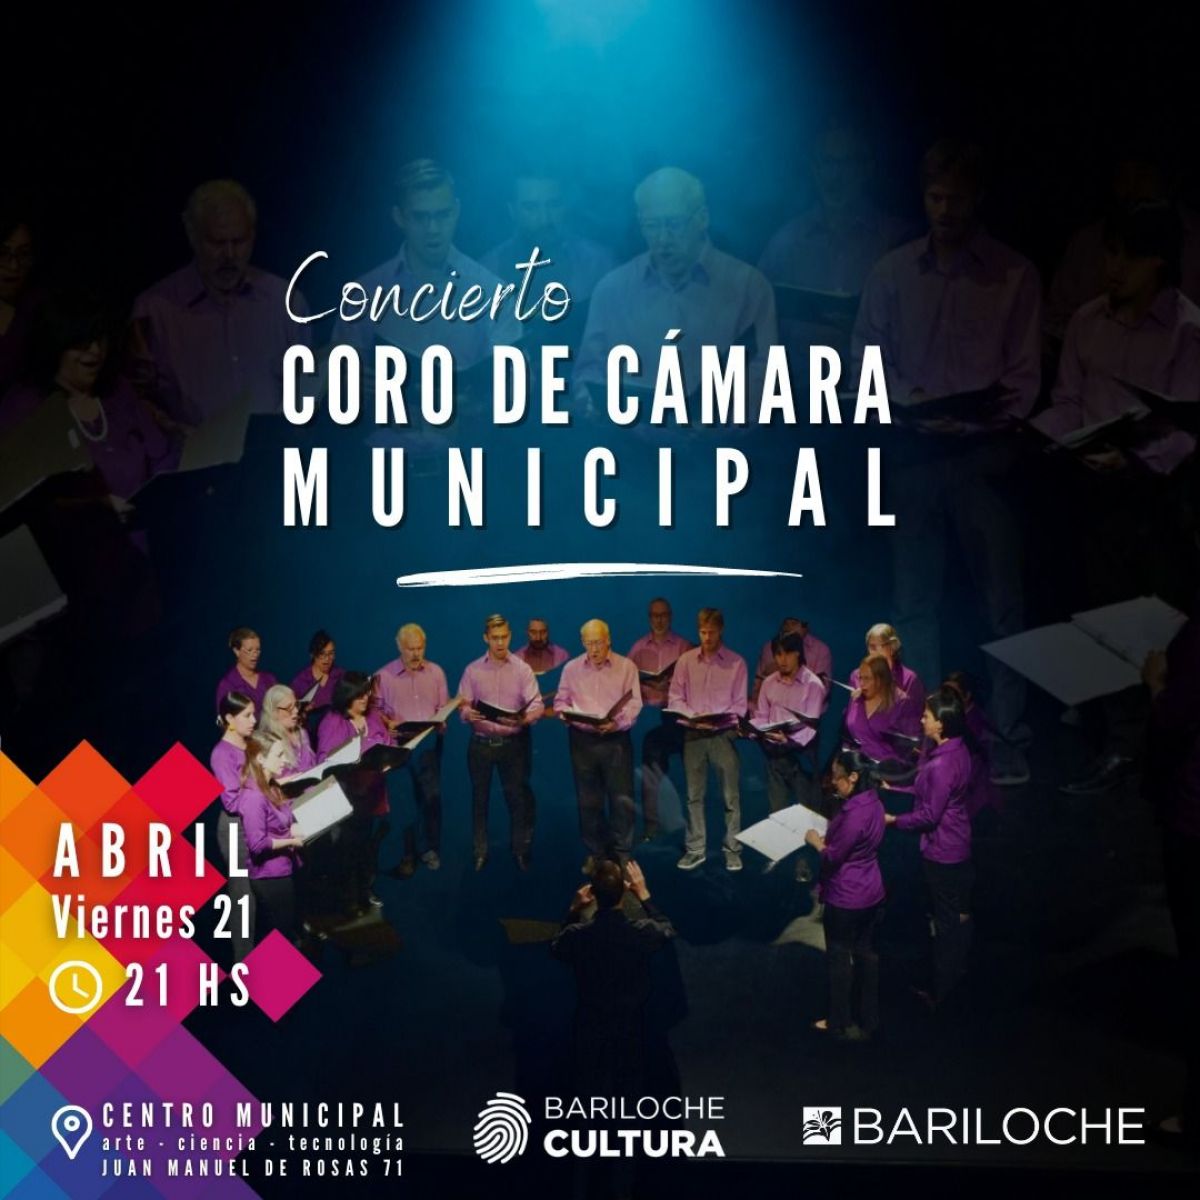 Invitan a un concierto del Coro de Cámara Municipal